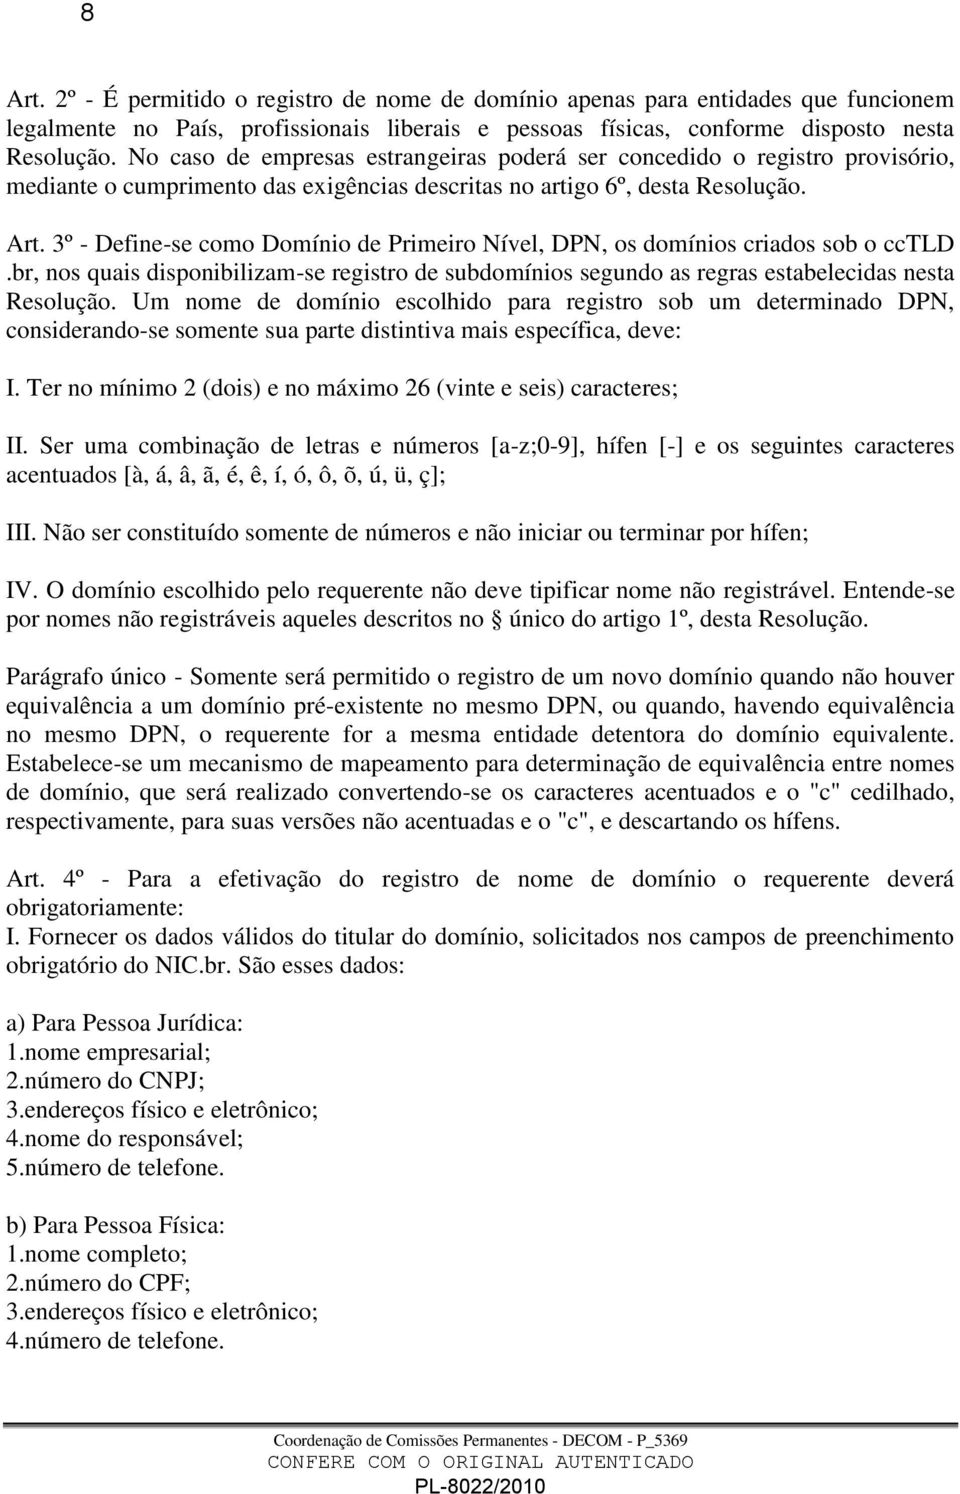 3º - Define-se como Domínio de Primeiro Nível, DPN, os domínios criados sob o cctld.br, nos quais disponibilizam-se registro de subdomínios segundo as regras estabelecidas nesta Resolução.